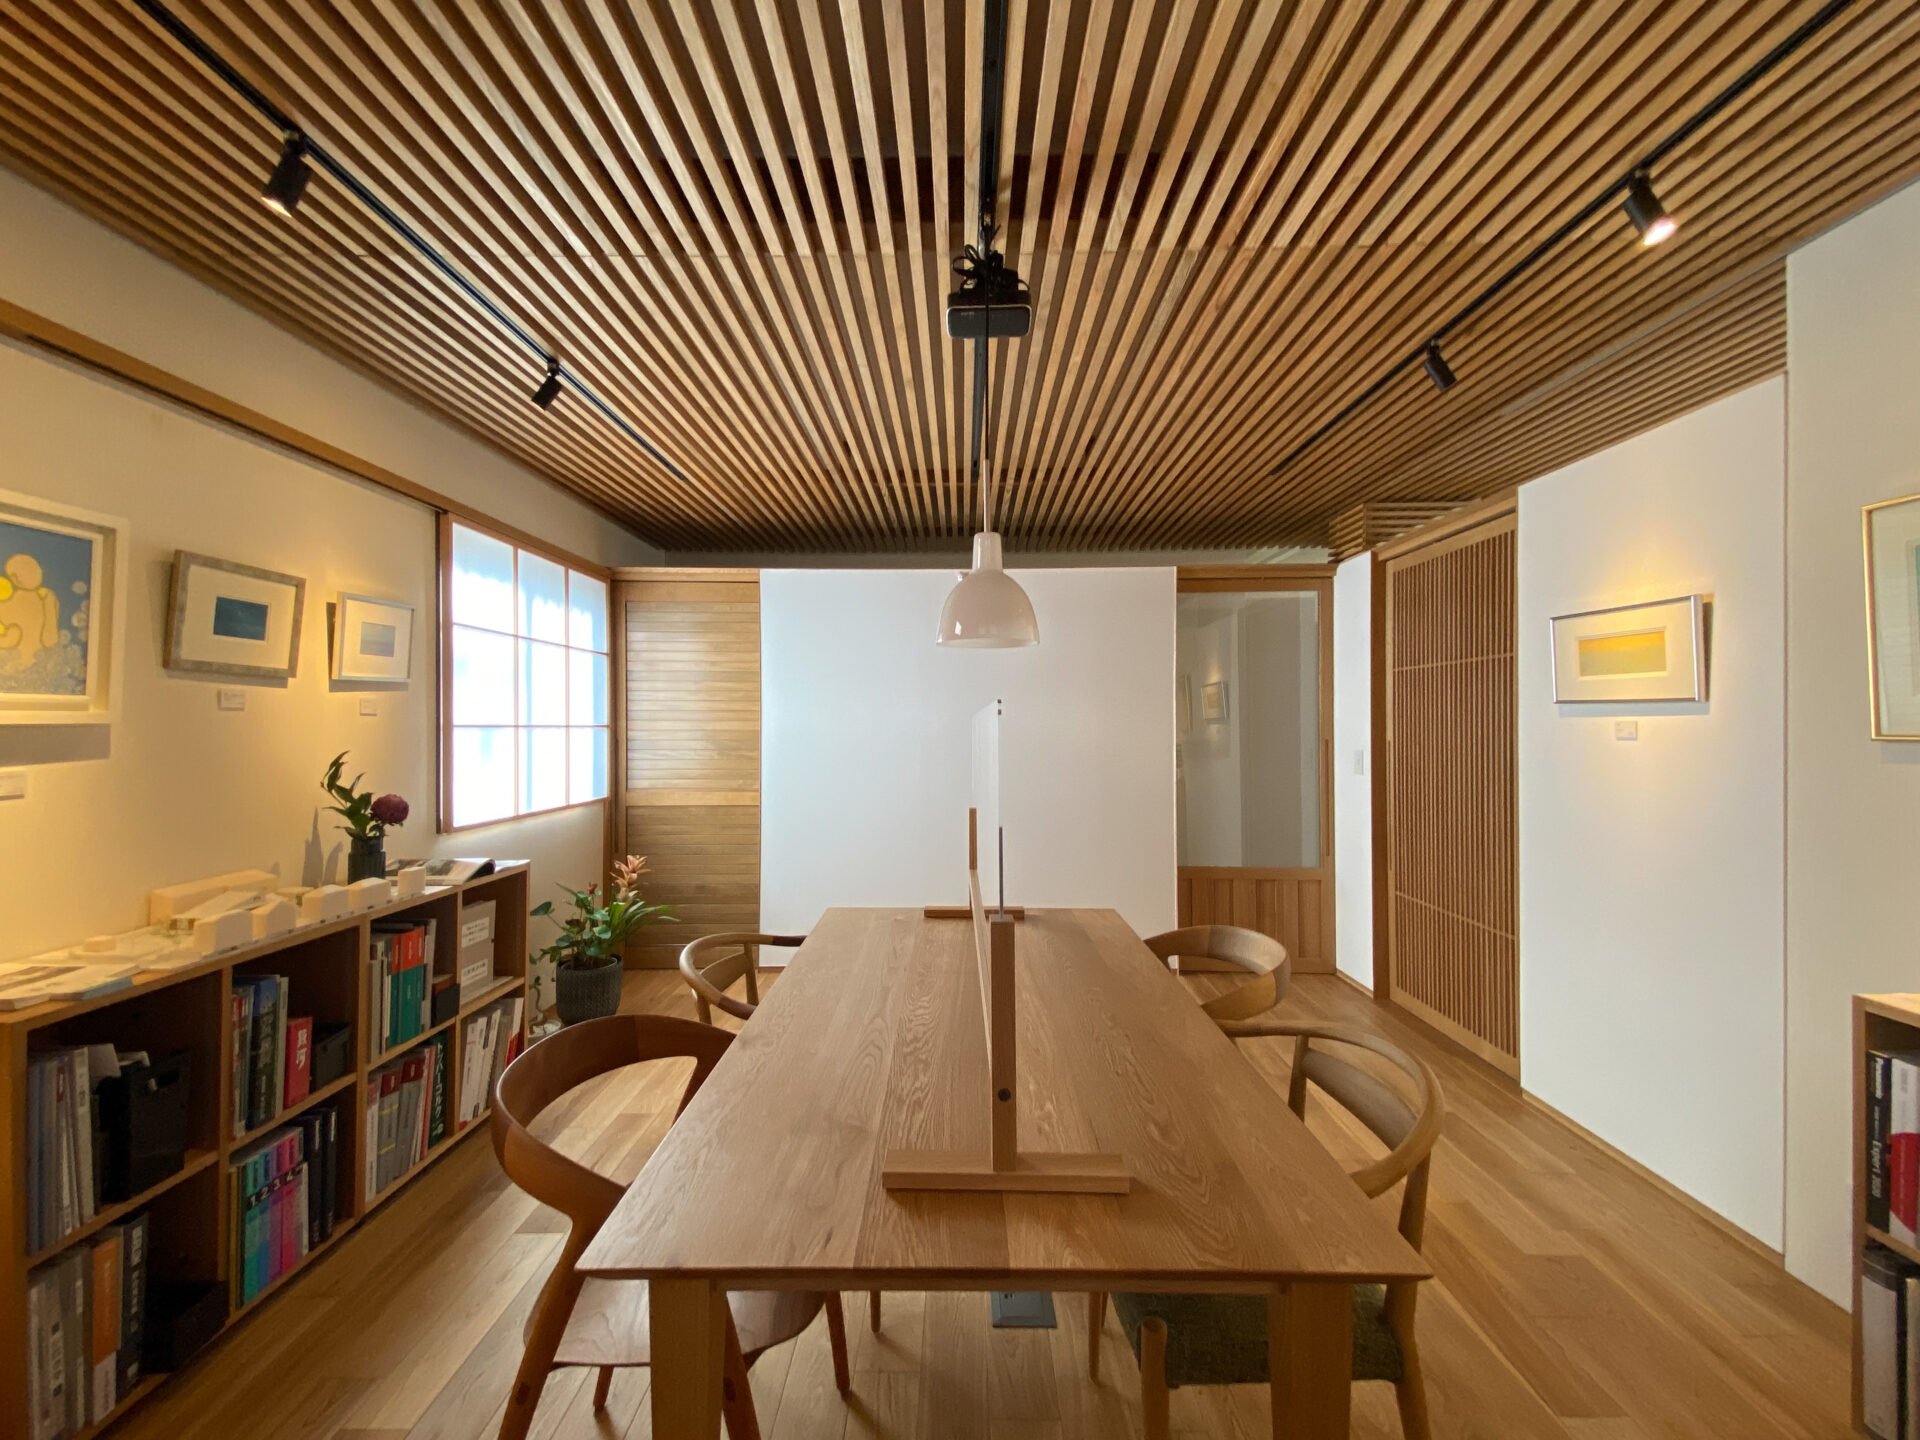 岡崎市で和モダンな木の家をお考えの方は木の家工務店サン工房岡崎スタジオへお問合せください